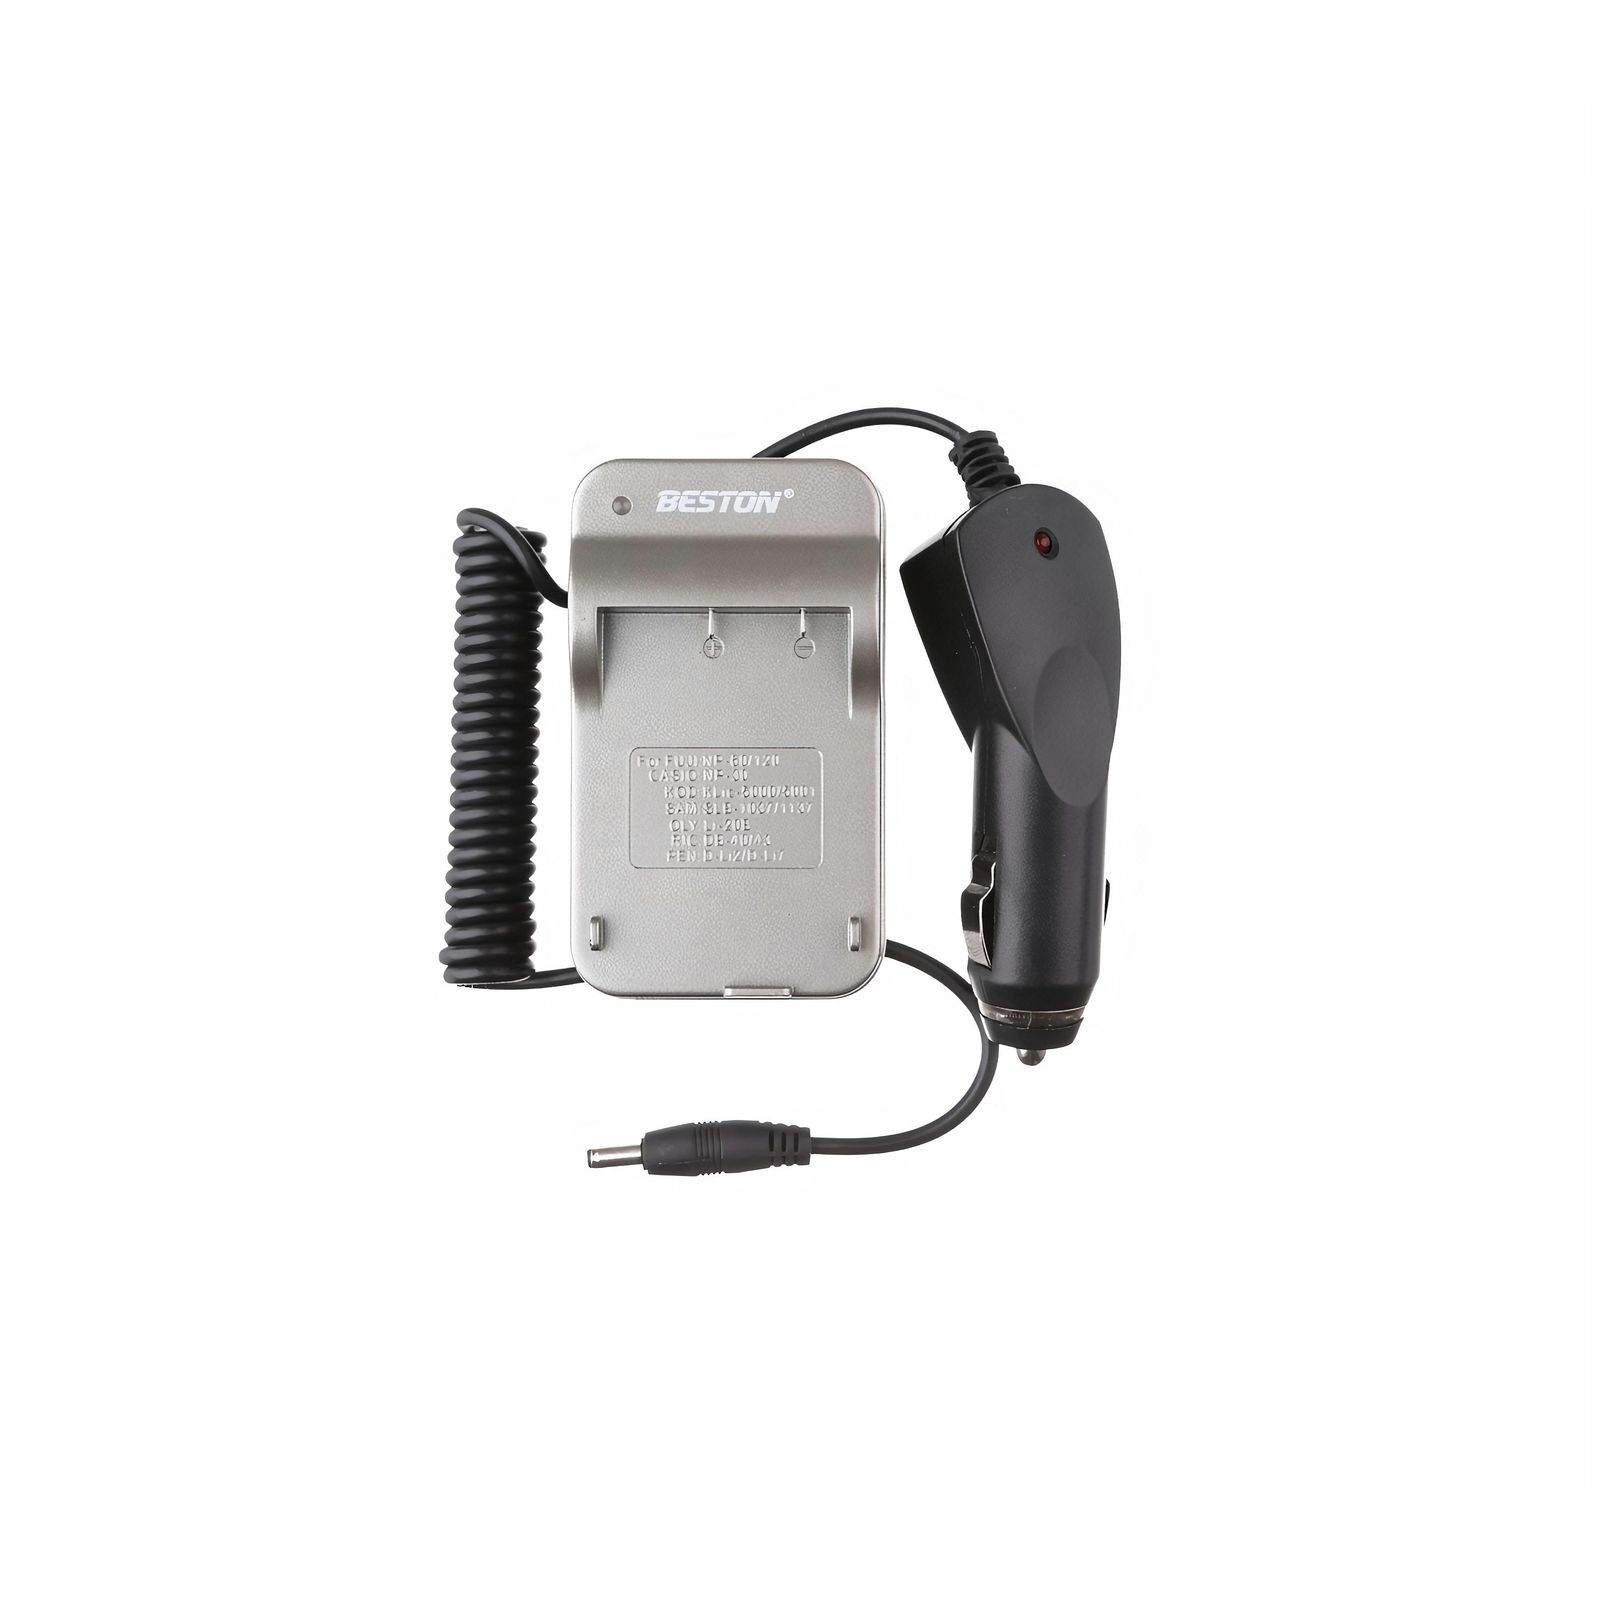 Зарядное устройство Beston BST-613 для Fujifilm NP-60/NP-20//KLIC- 5000/KLIC- 5001, 3310